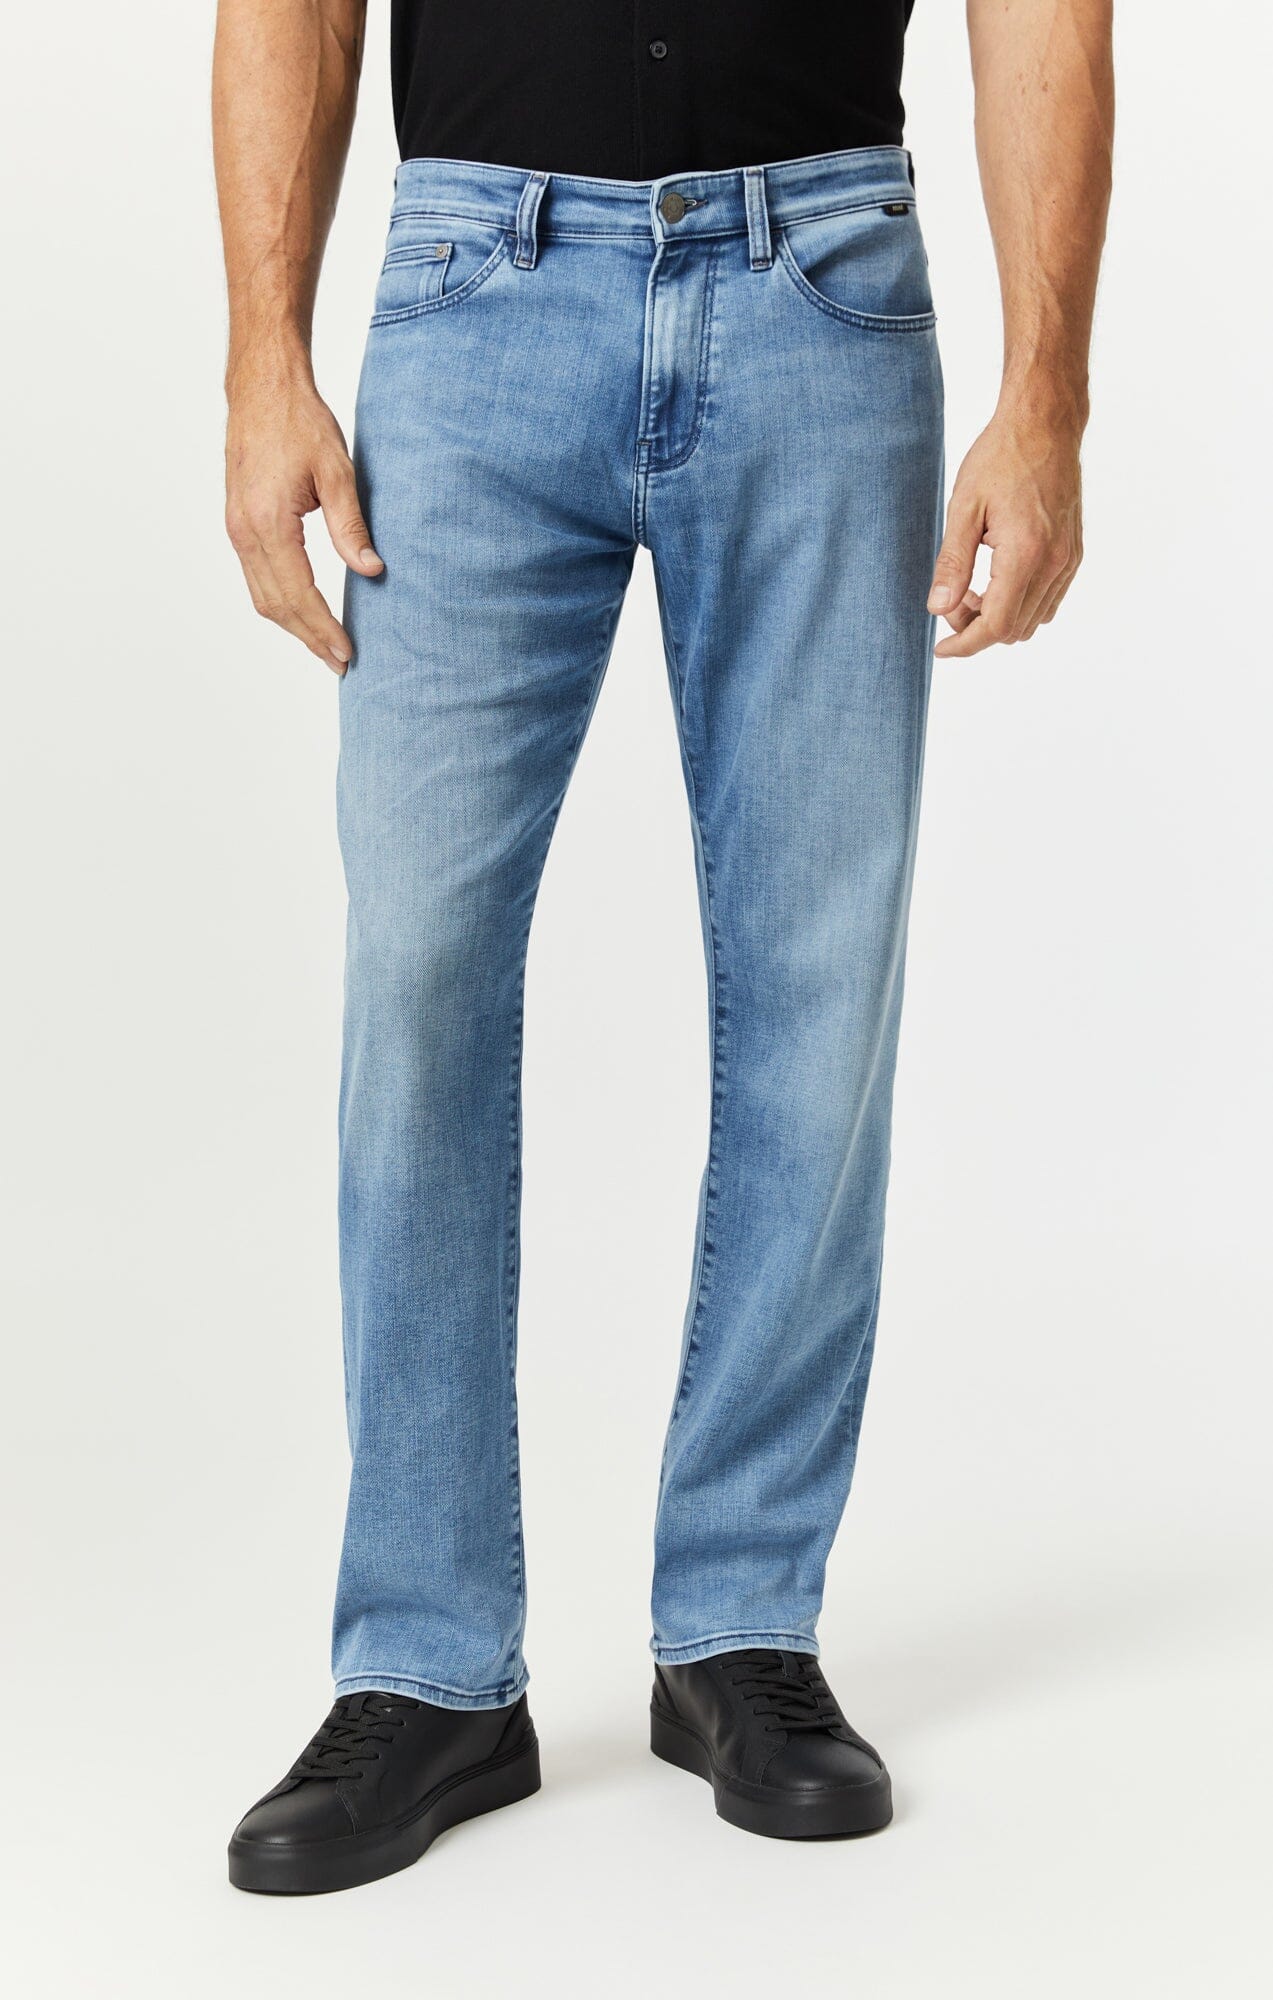 Men's Straight Leg Jeans - Shop Straight Jeans for Men | Mavi Jeans®